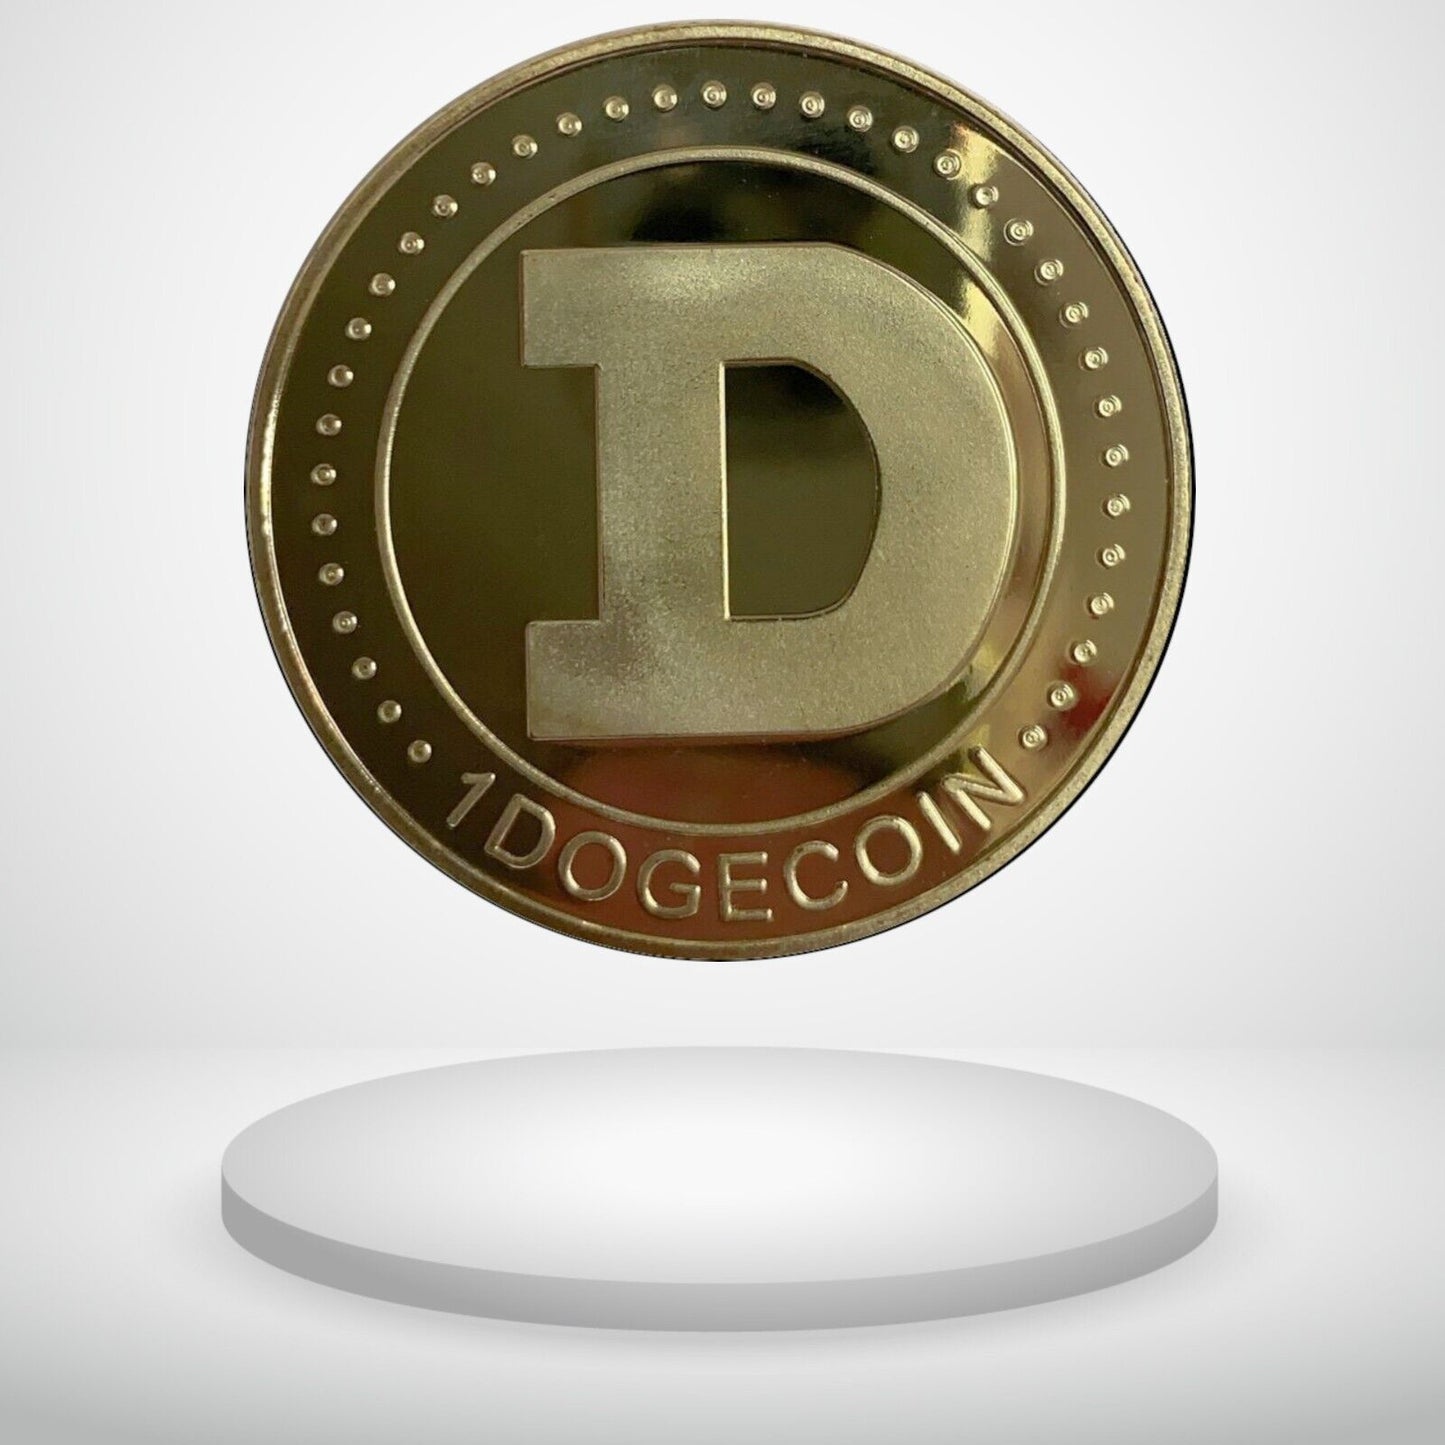 Dogecoin | DOGE Physical Crypto Coin Novelty Souvenir Token Gold Color